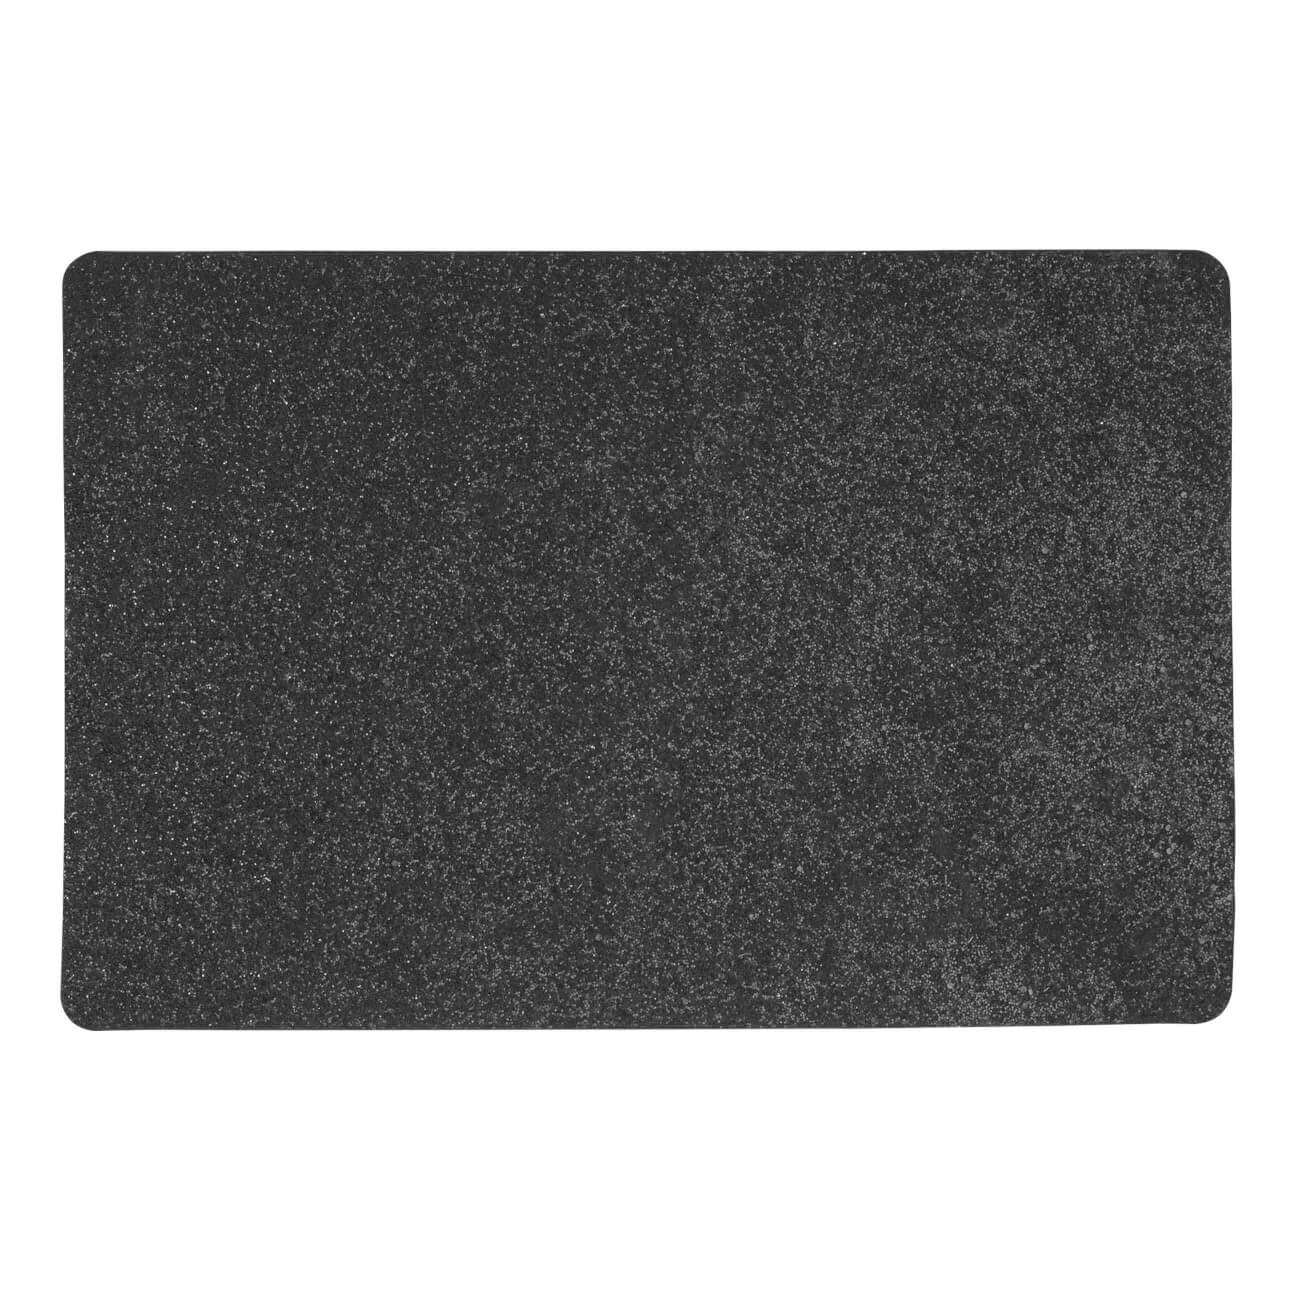 Салфетка под приборы, 30х45 см, ПВХ, прямоугольная, черная, Rock салфетка под приборы 38 см пвх круглая черная azhur grid